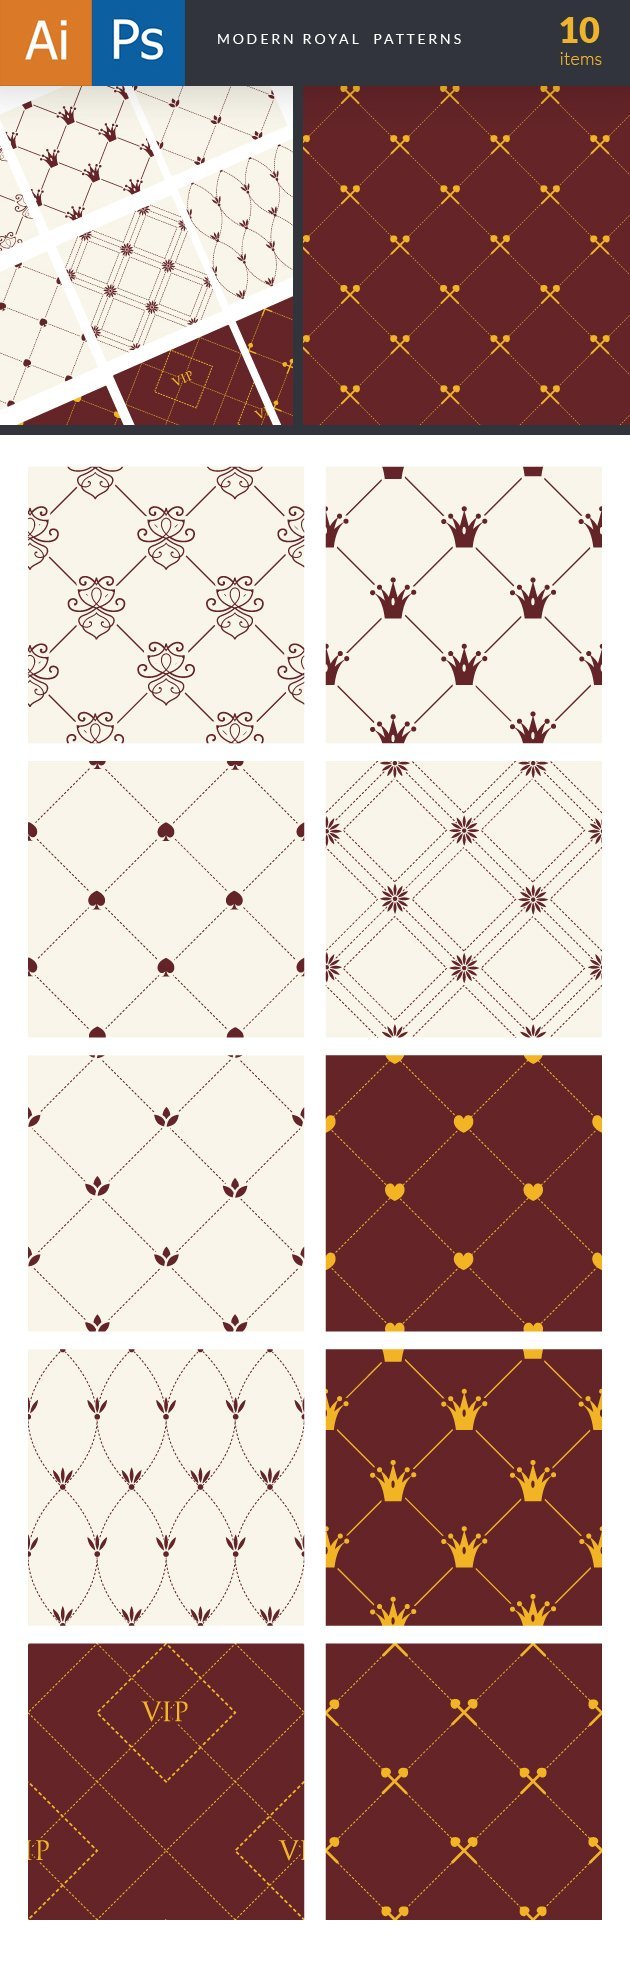 designtnt-patterns-modern-royal-large